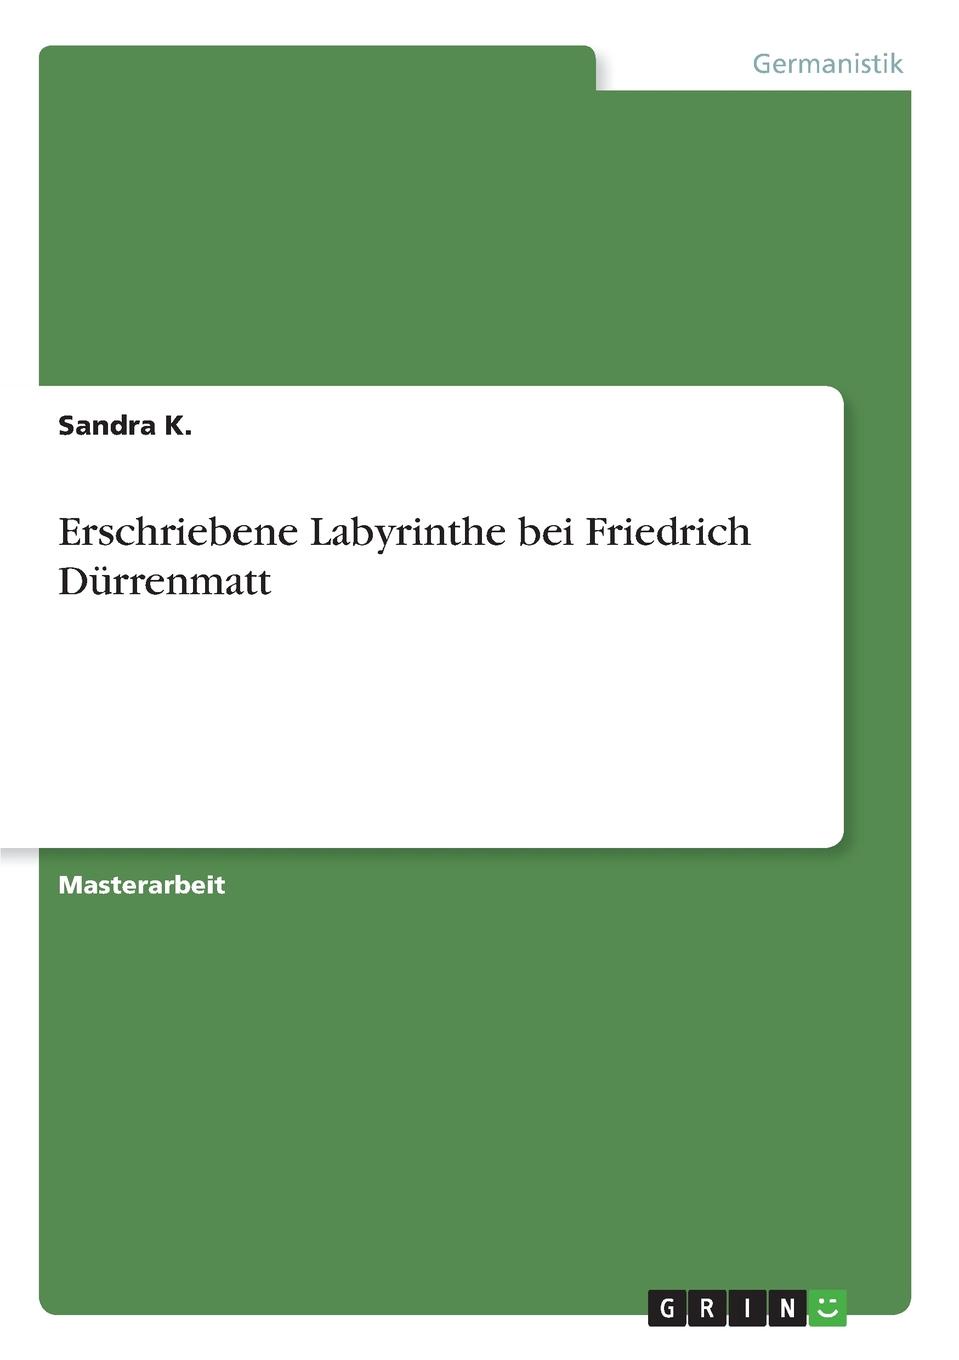 Erschriebene Labyrinthe bei Friedrich Durrenmatt